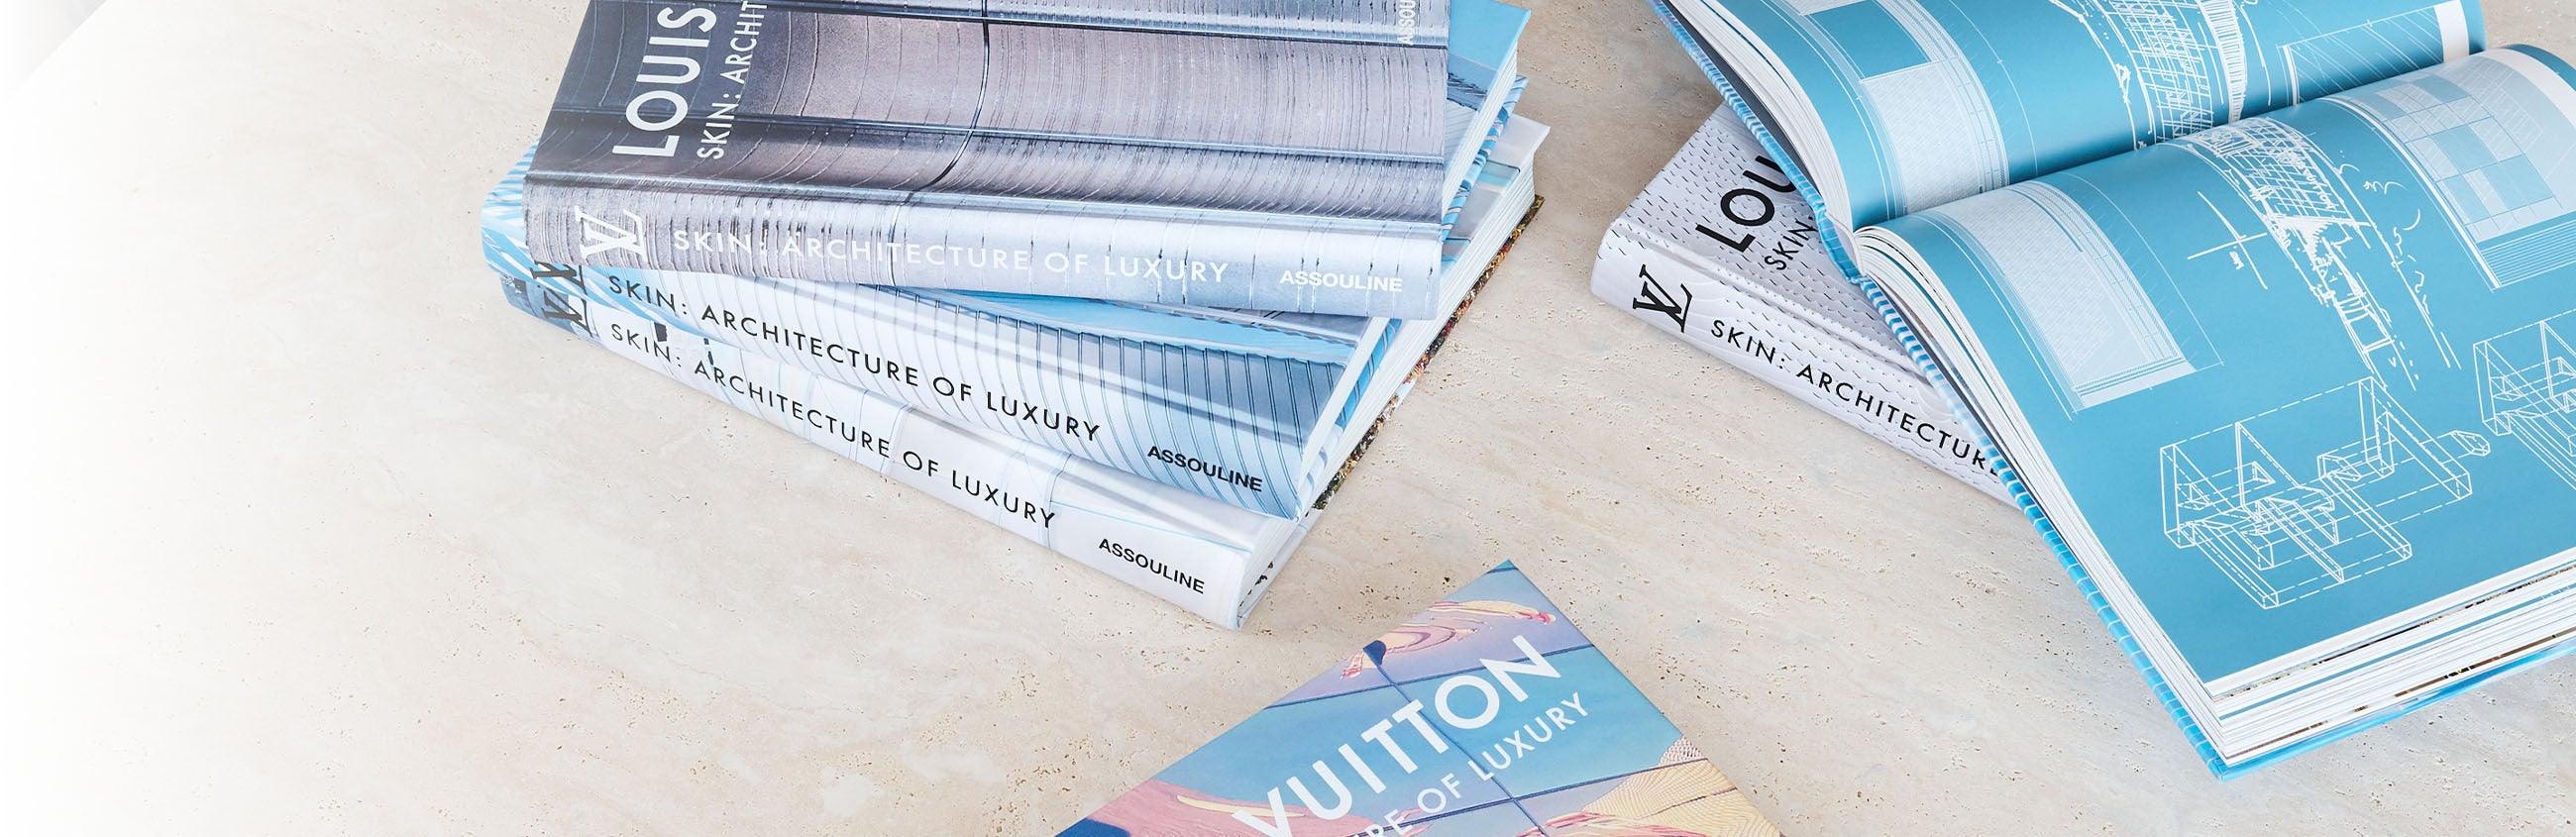 Louis Vuitton Collection - ASSOULINE